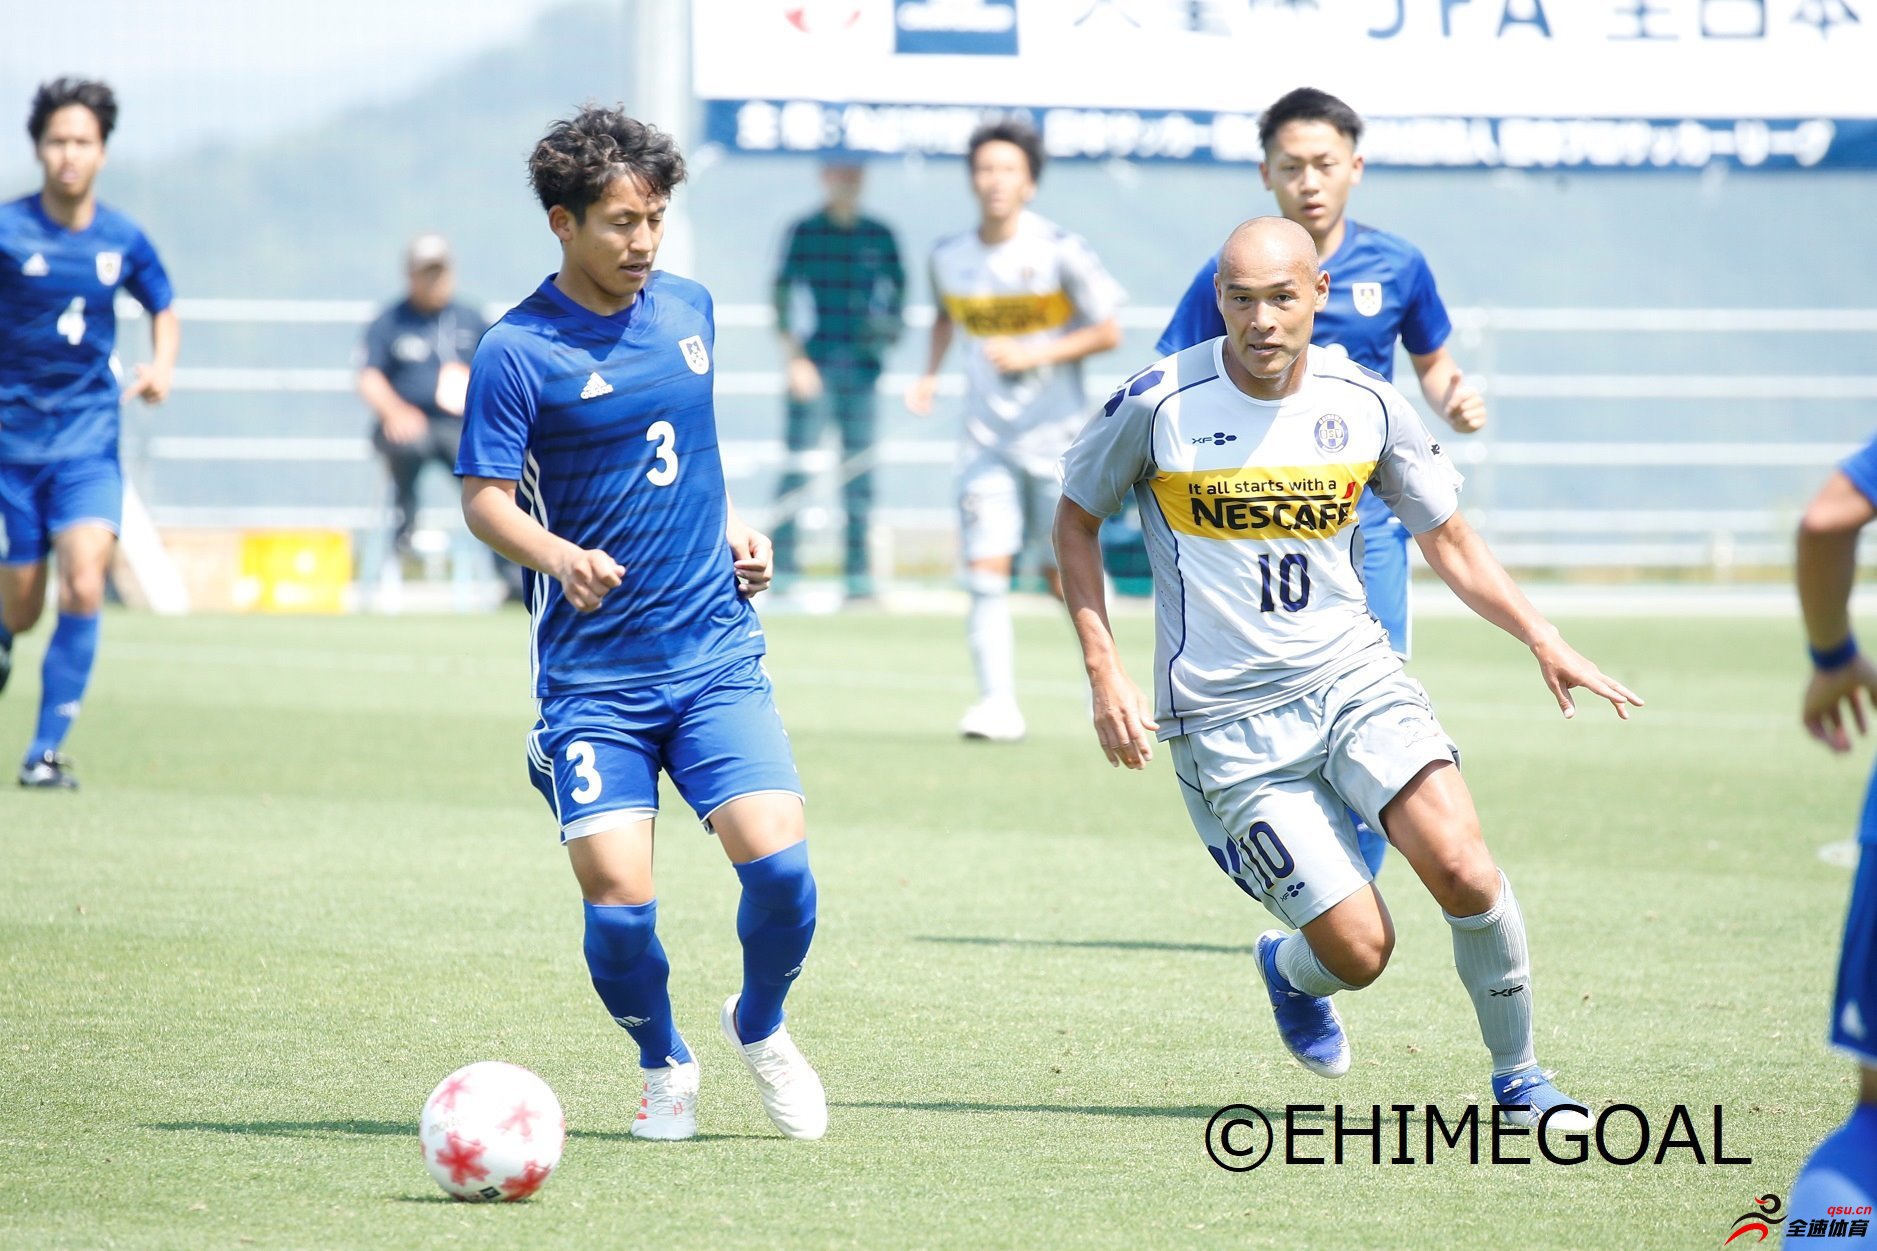 高原直泰率领个人球队冲绳SV冲进天皇杯第二轮